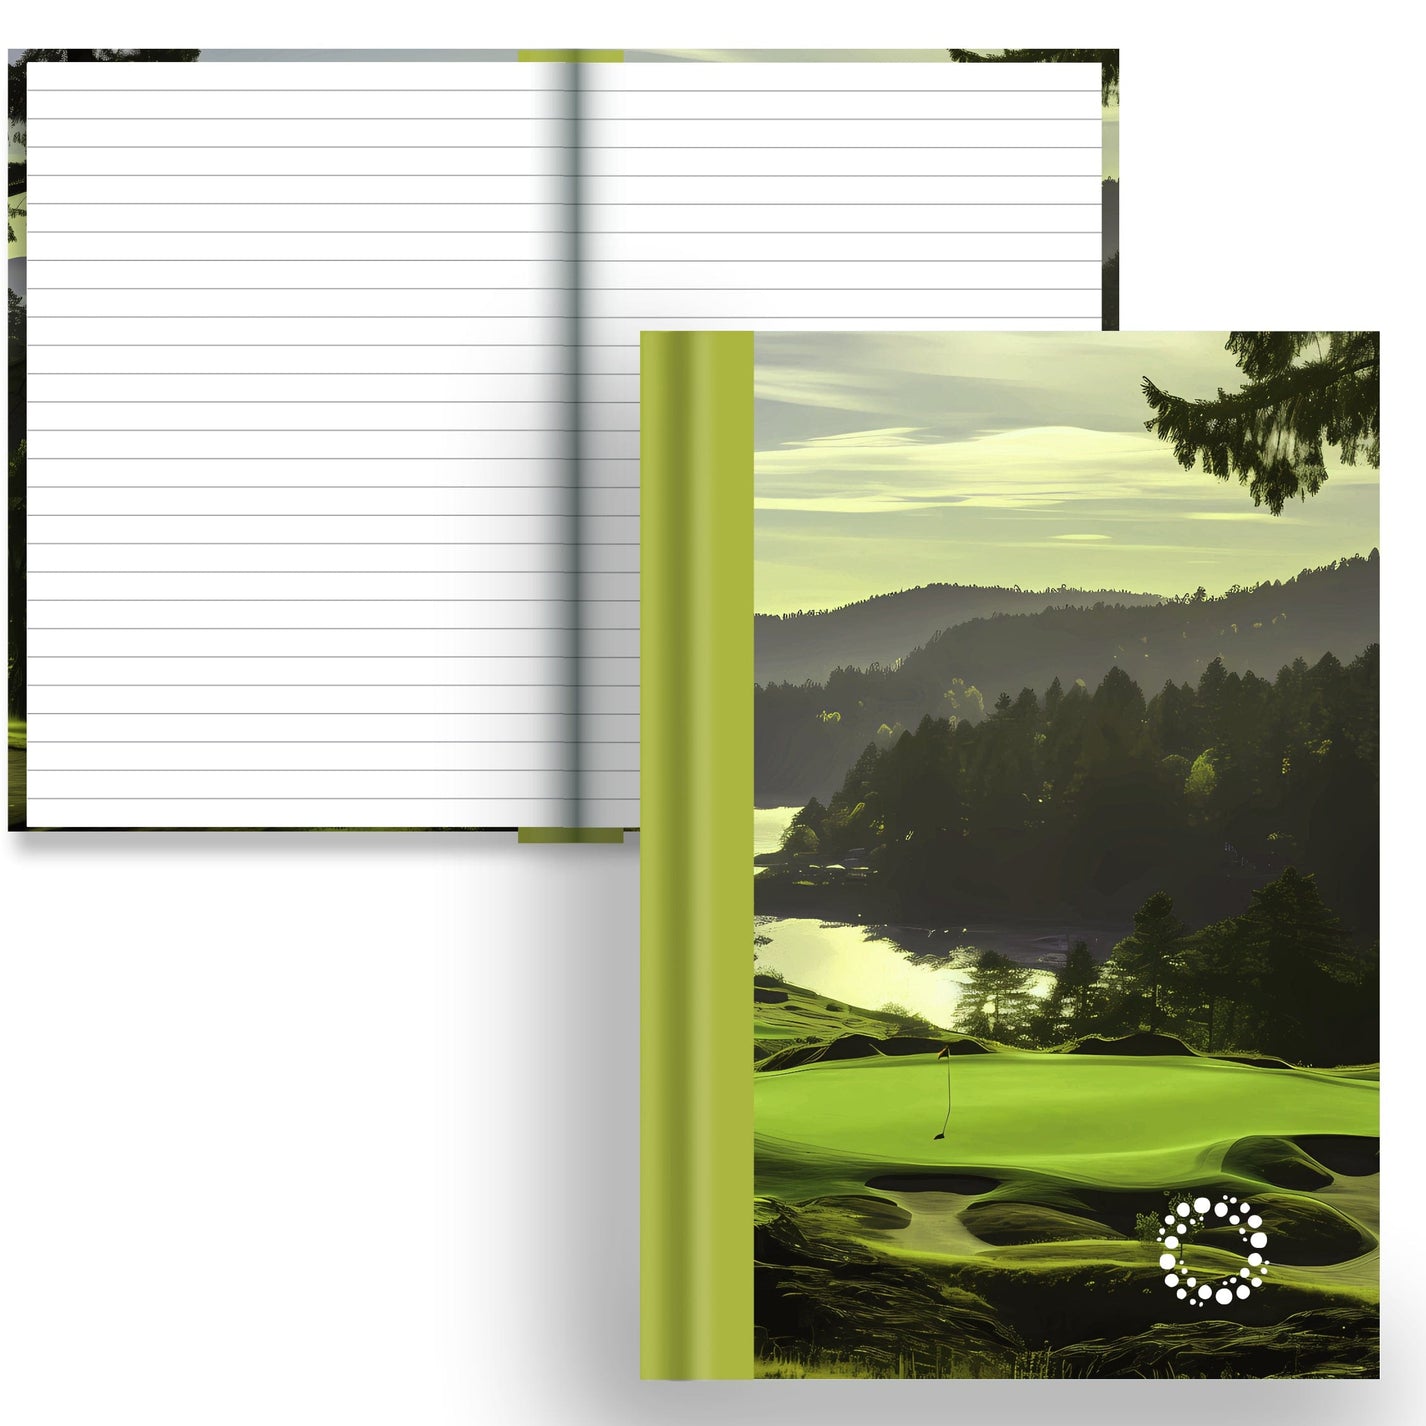 DayDot Journals A5 Notebook Lined Paper Fairway - A5 Hardback Notebook